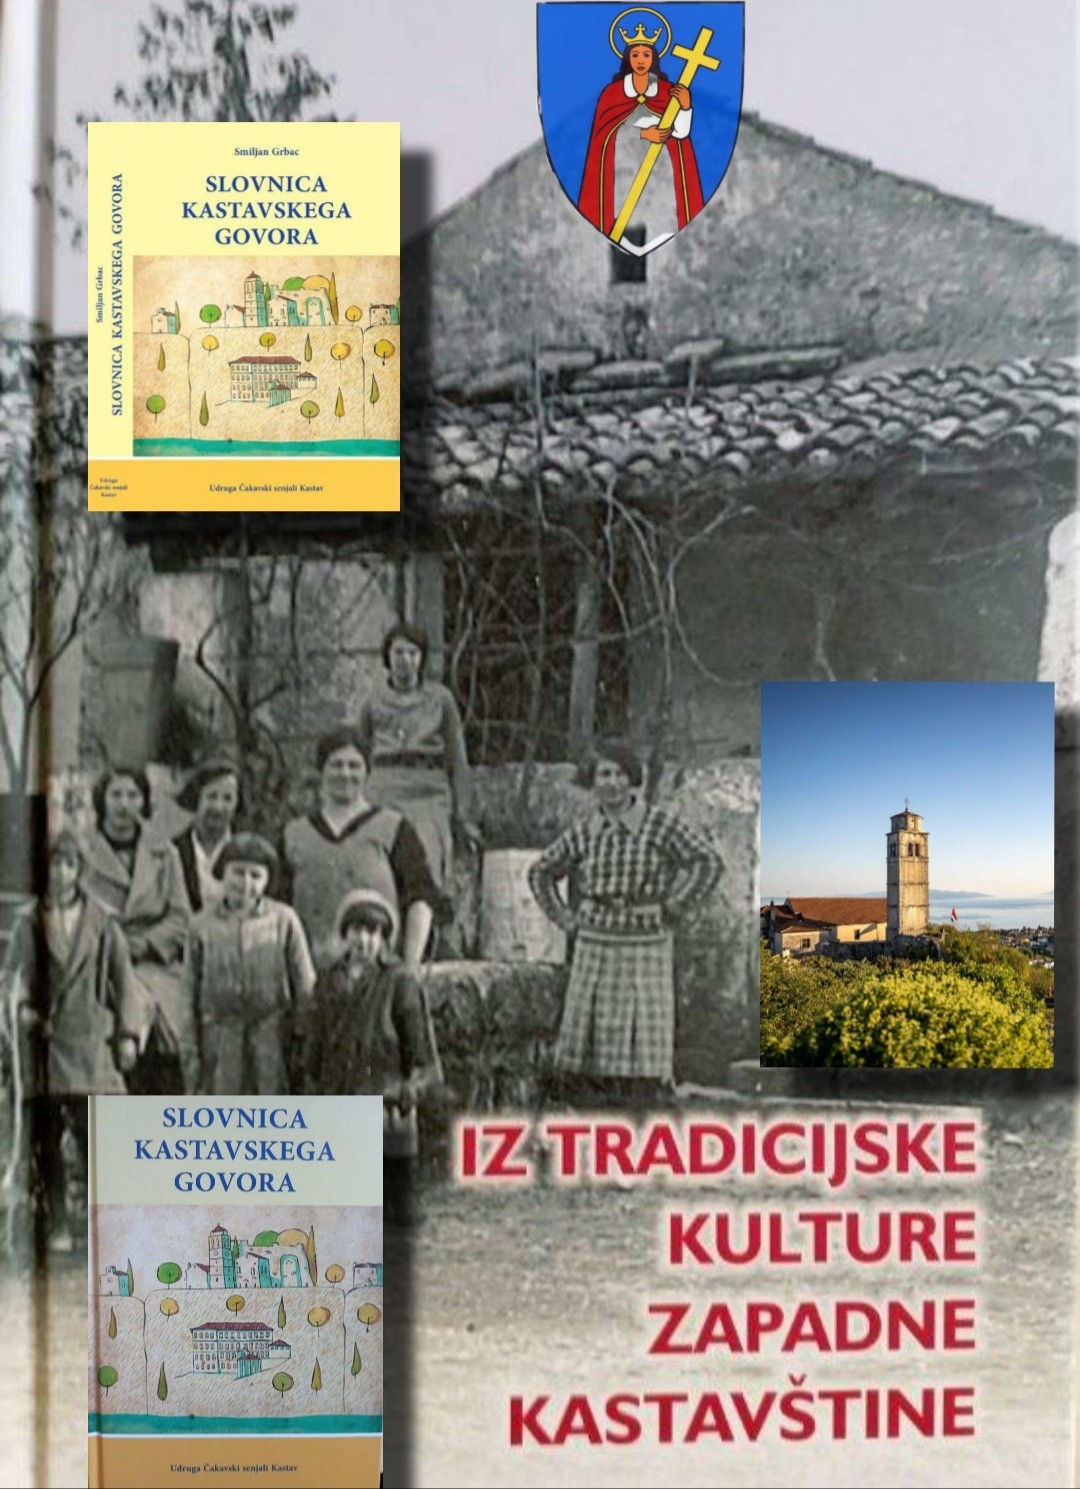 KASTAVSKE BESEDI (četiri knjige o tradiciji i govoru Kastavštine)